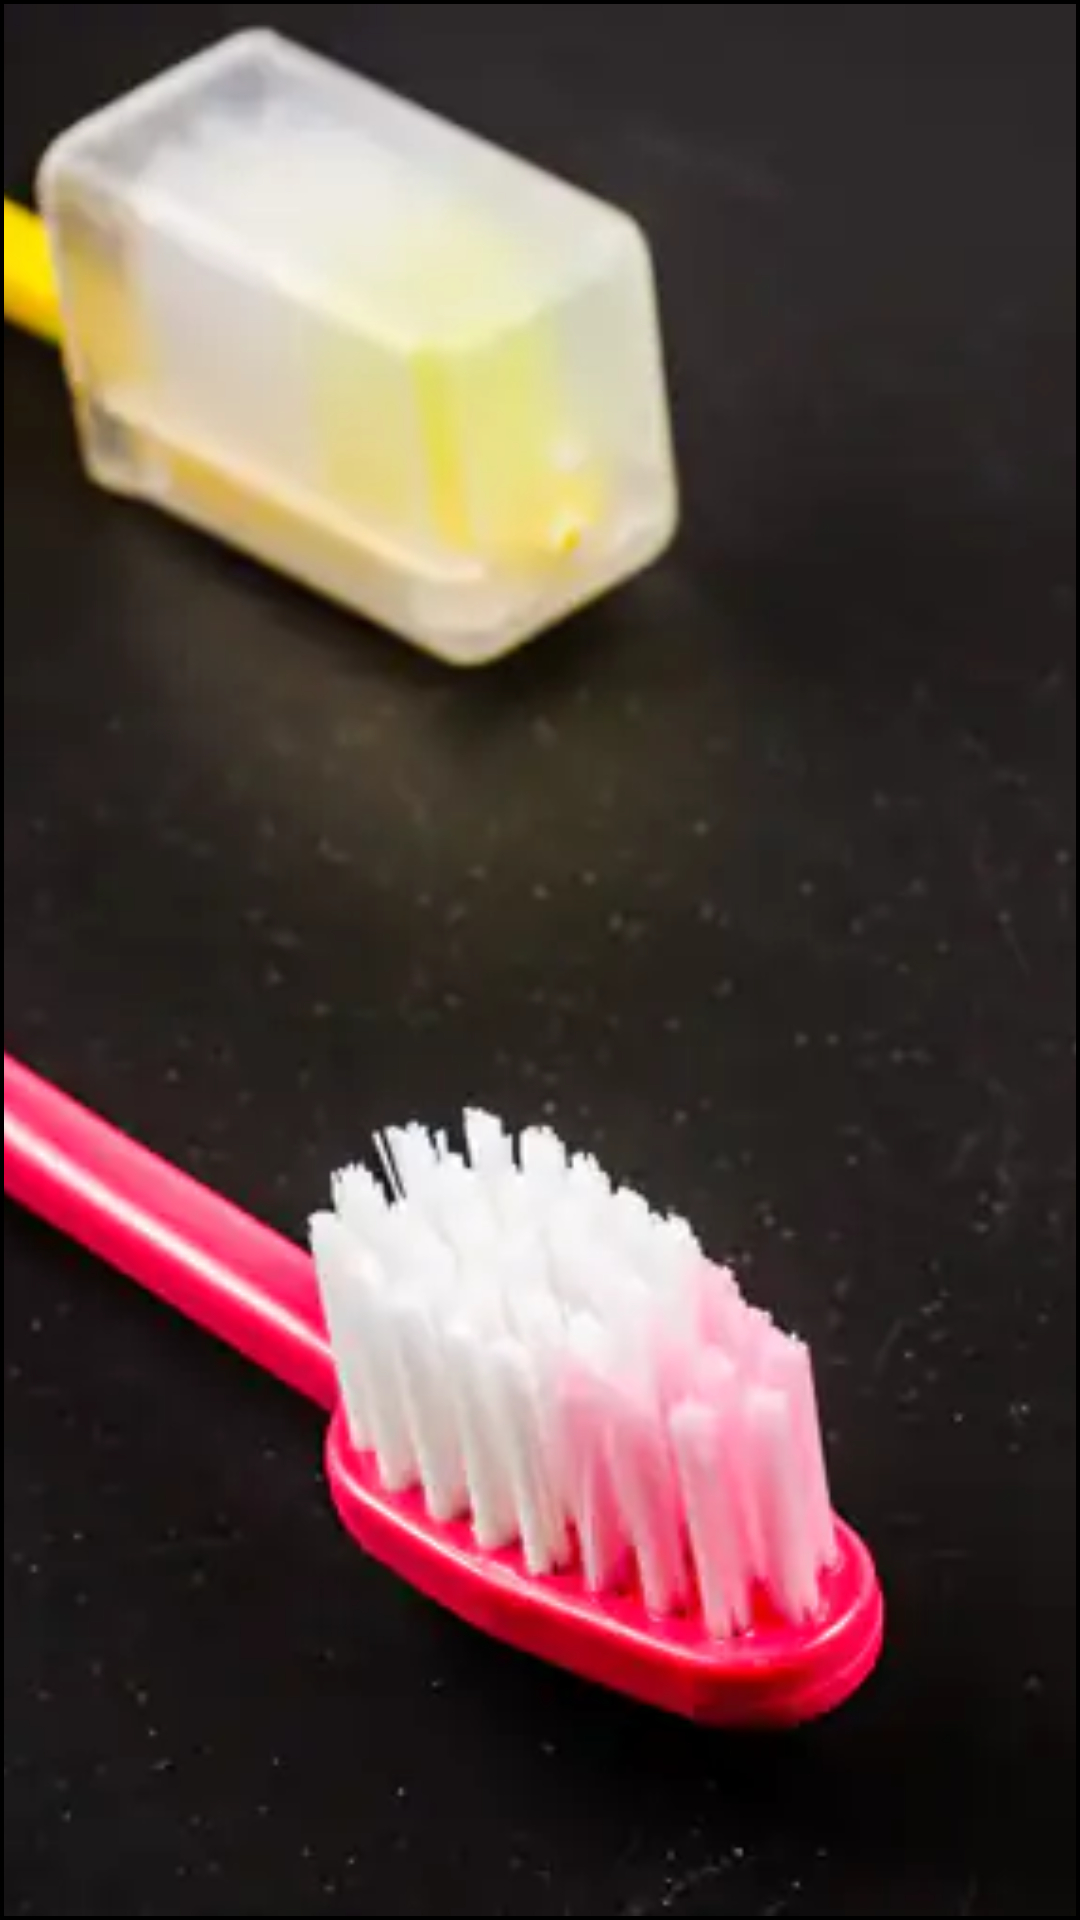 टूथब्रश को प्लास्टिक के कवर से ढकना चाहिए या नहीं?